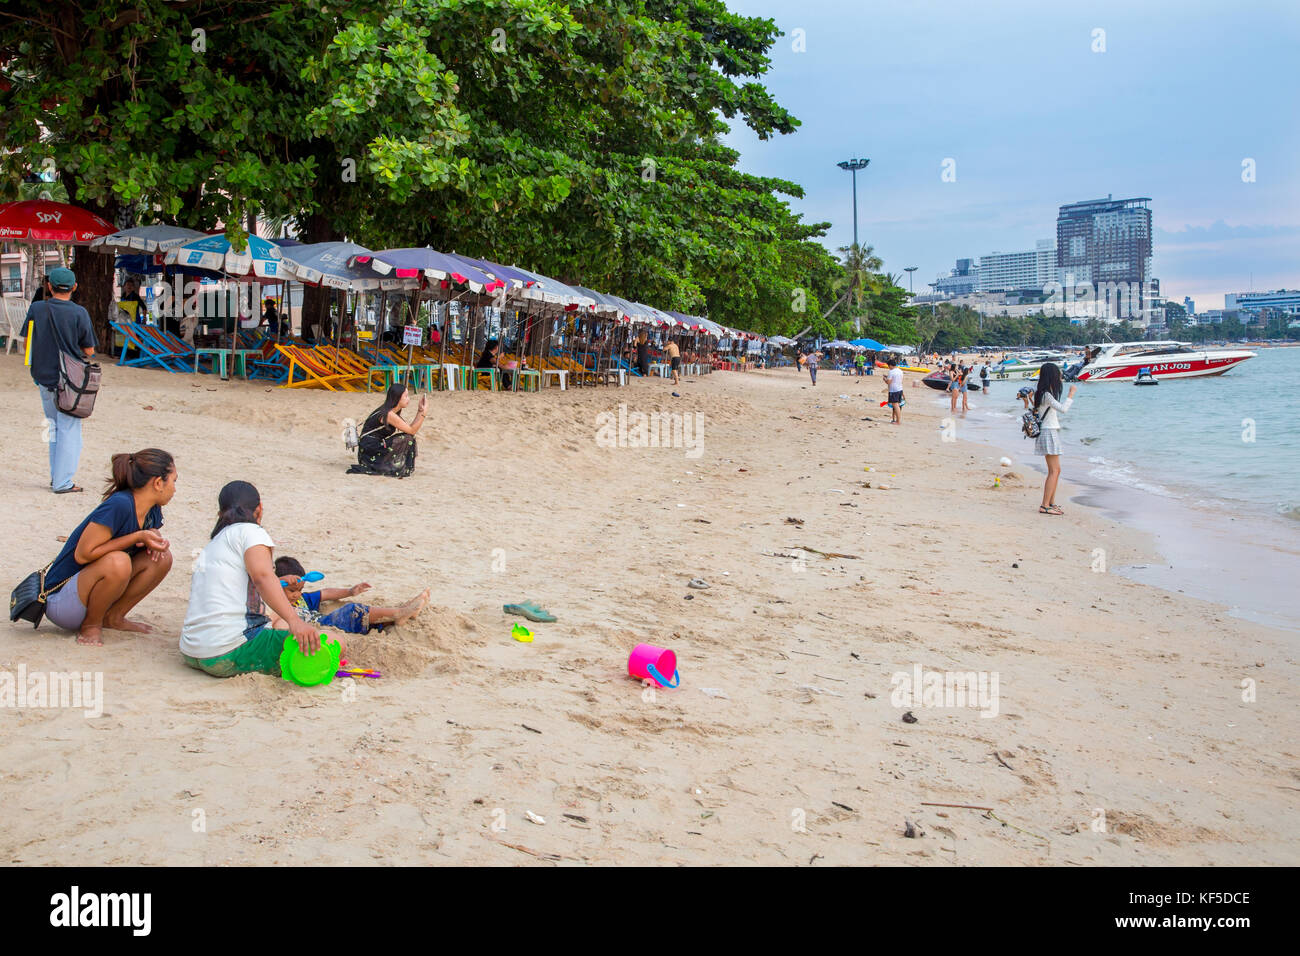 Pattaya Beach, Pattaya, Thailand Stock Photo